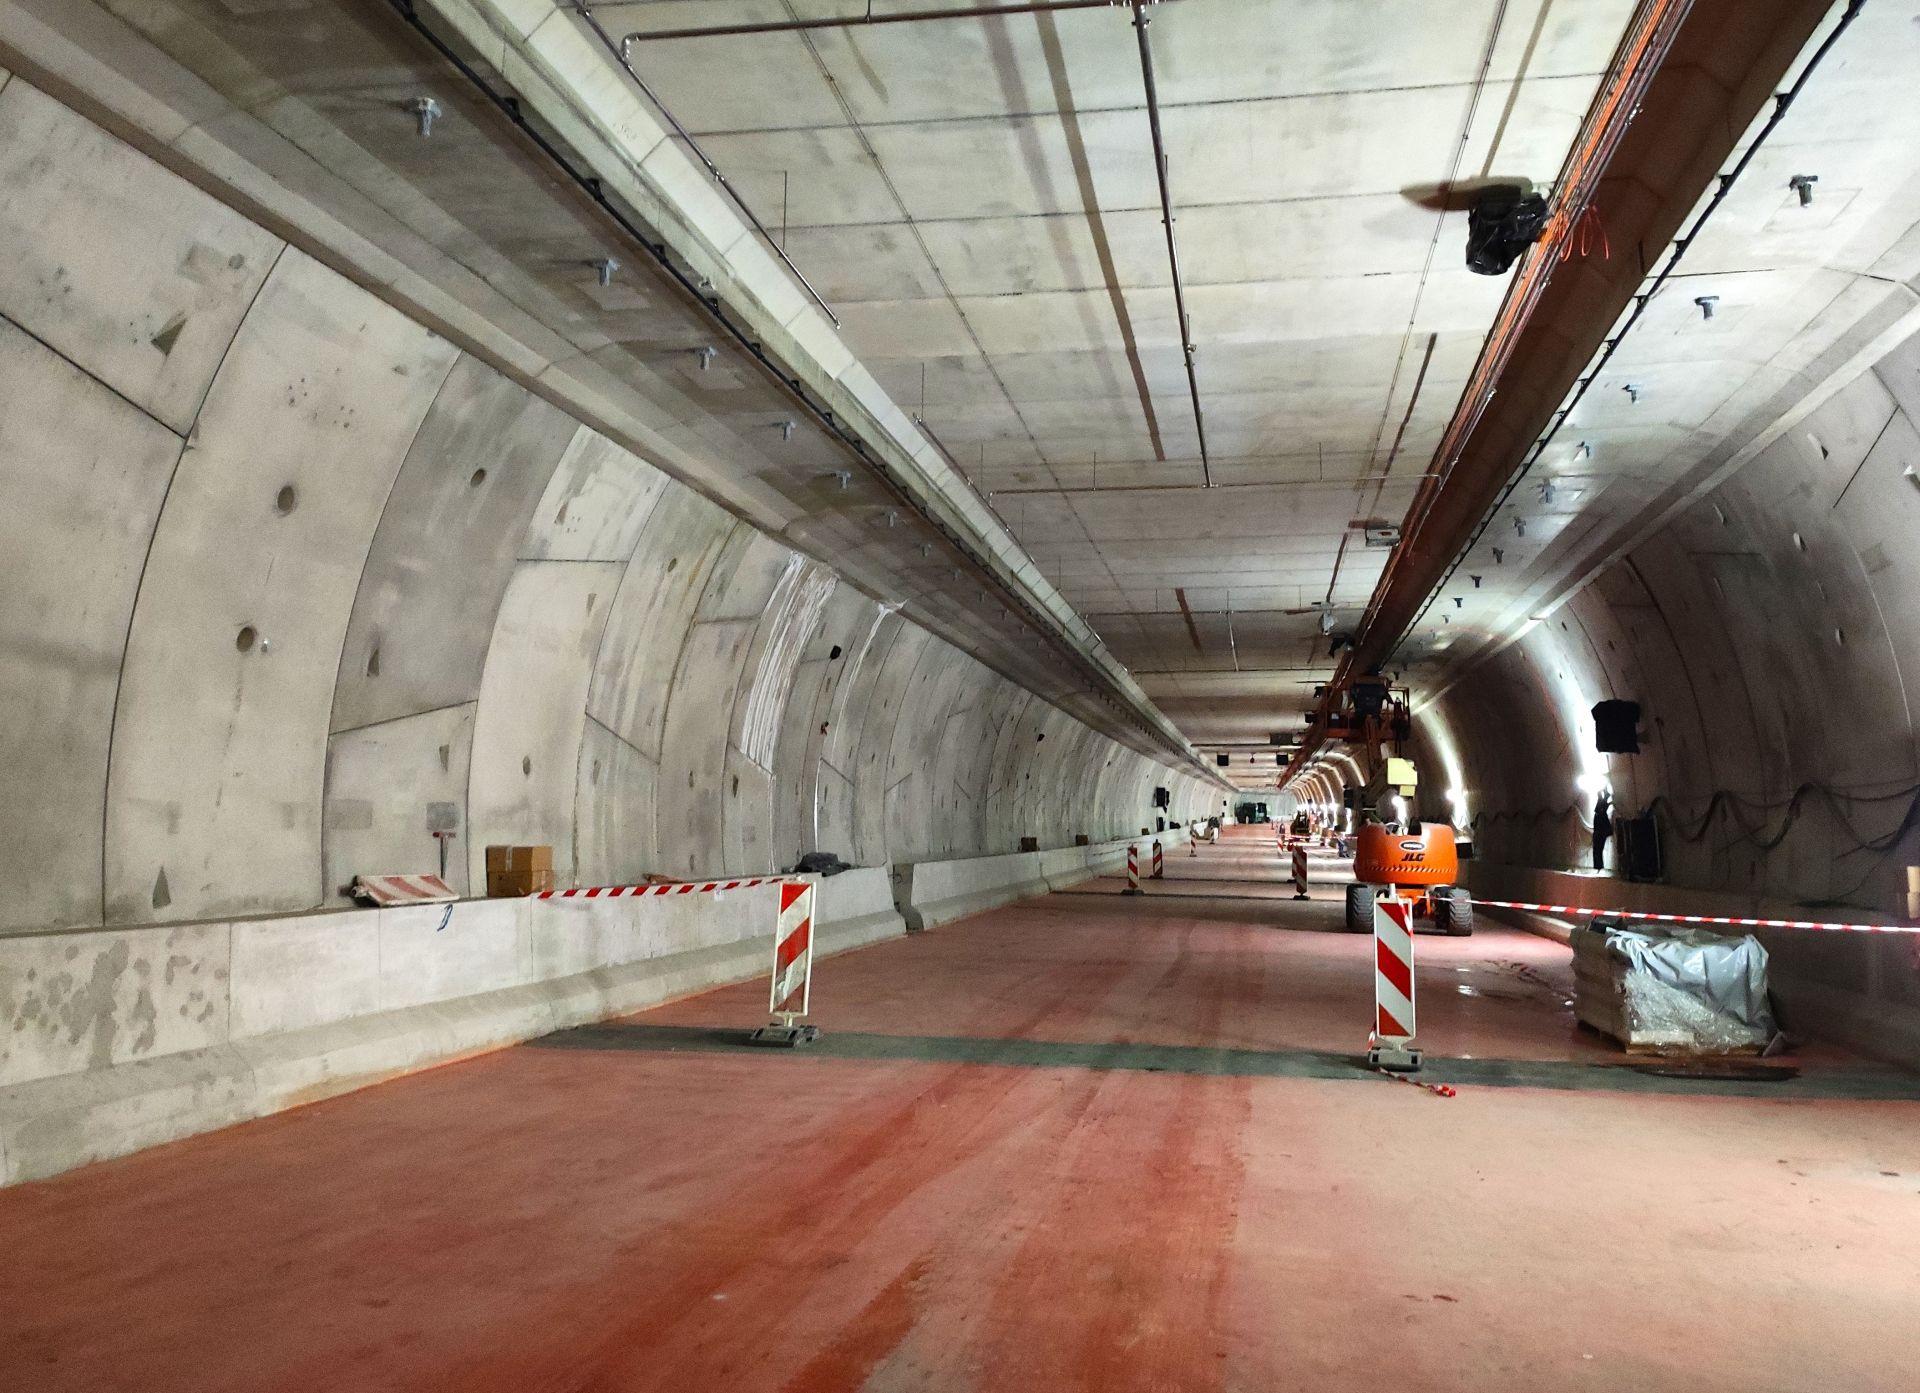 Budowa Tunelu W Świnoujściu Dzieje Się Naprawdę Sporo Zobacz Najnowsze Zdjęcia I Film Z Budowy 6733